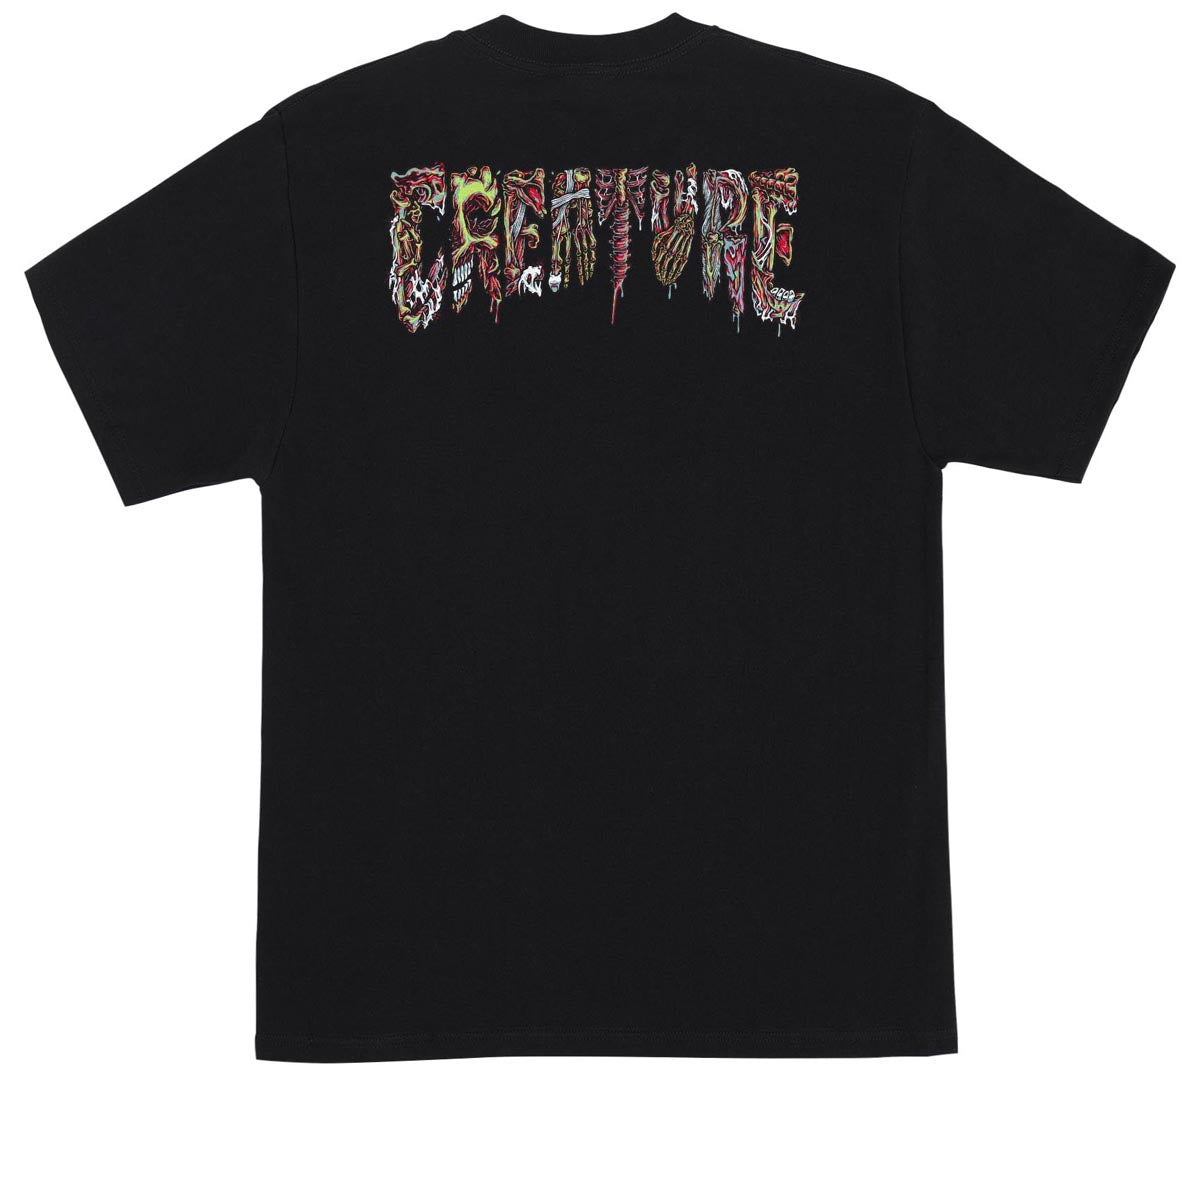 Creature Catacomb Relic T-Shirt - Black image 1